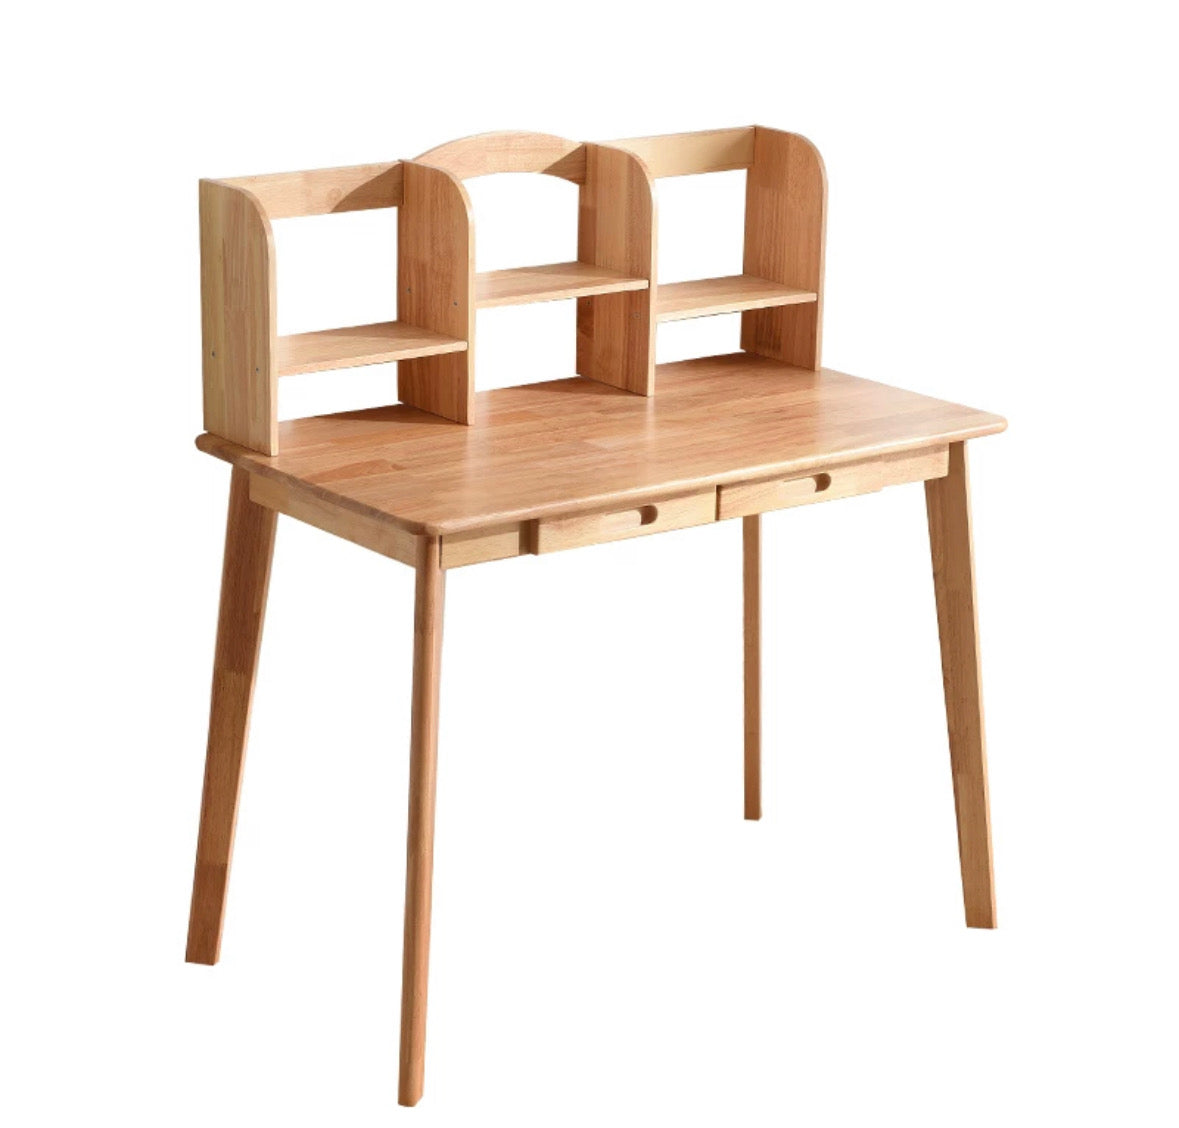 𝐘𝟎𝟗𝟖 solid wood desk